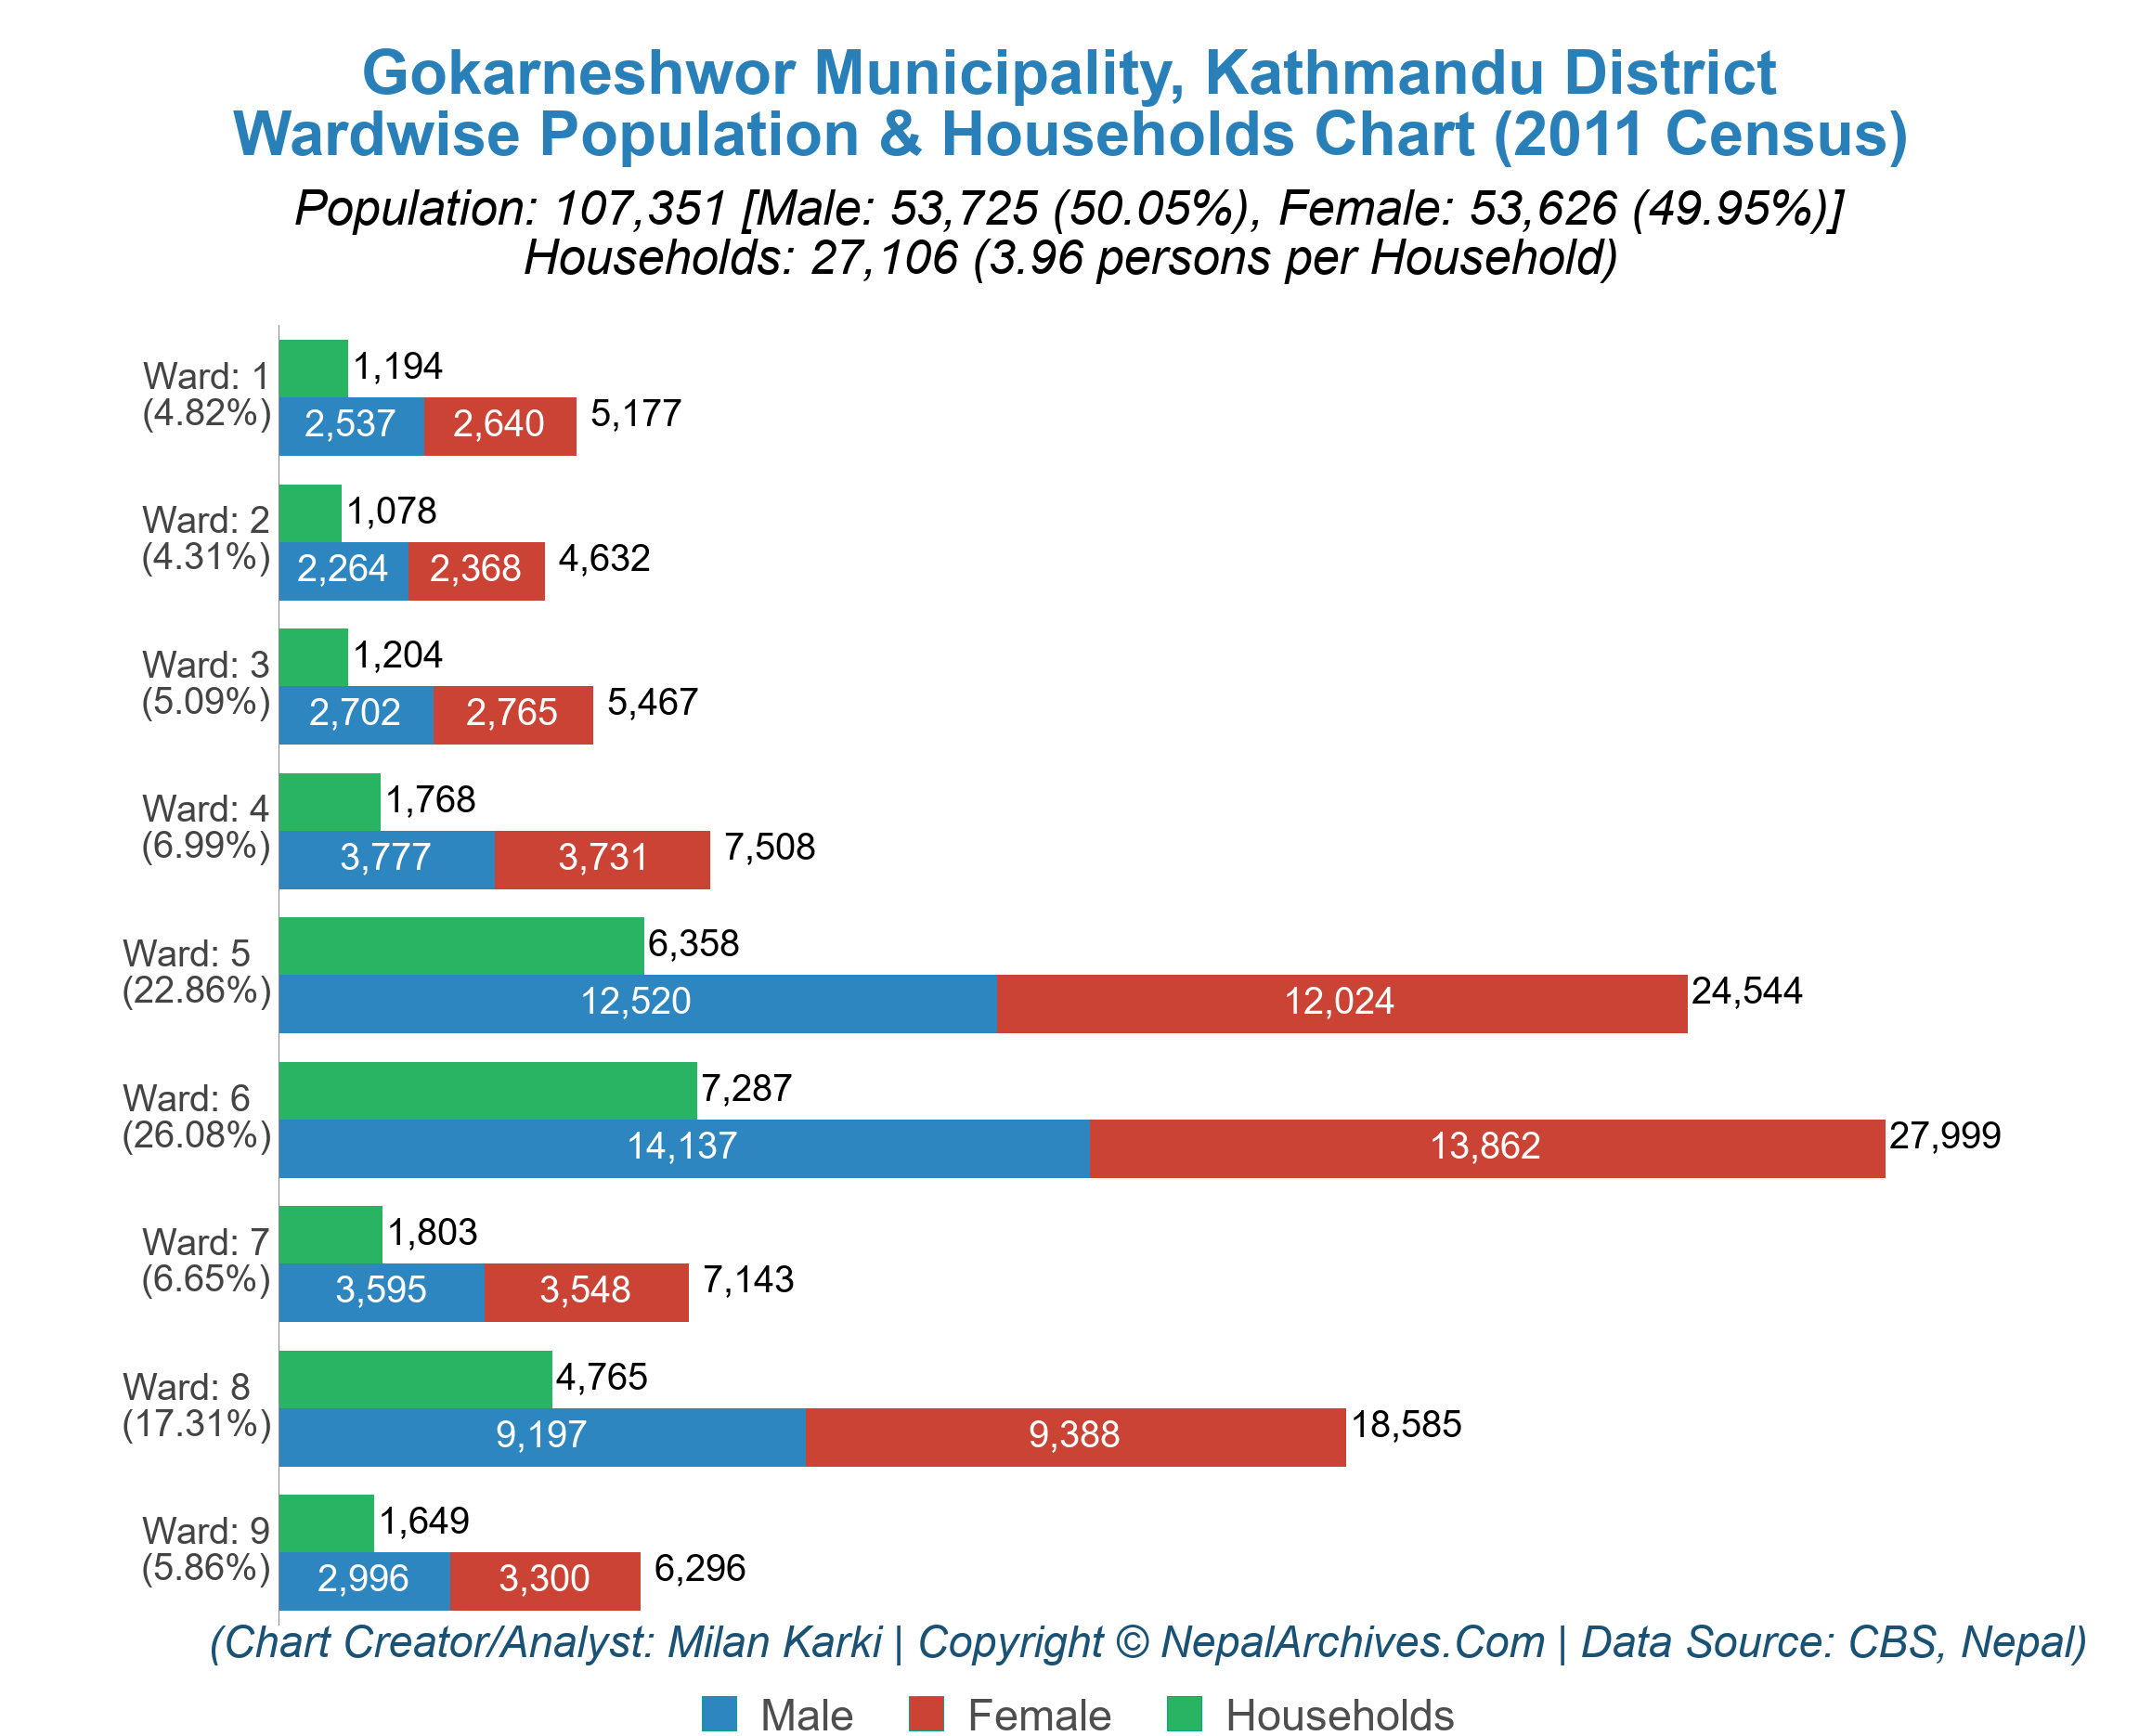 Wardwise Population & Households Chart of Gokarneshwor Municipality